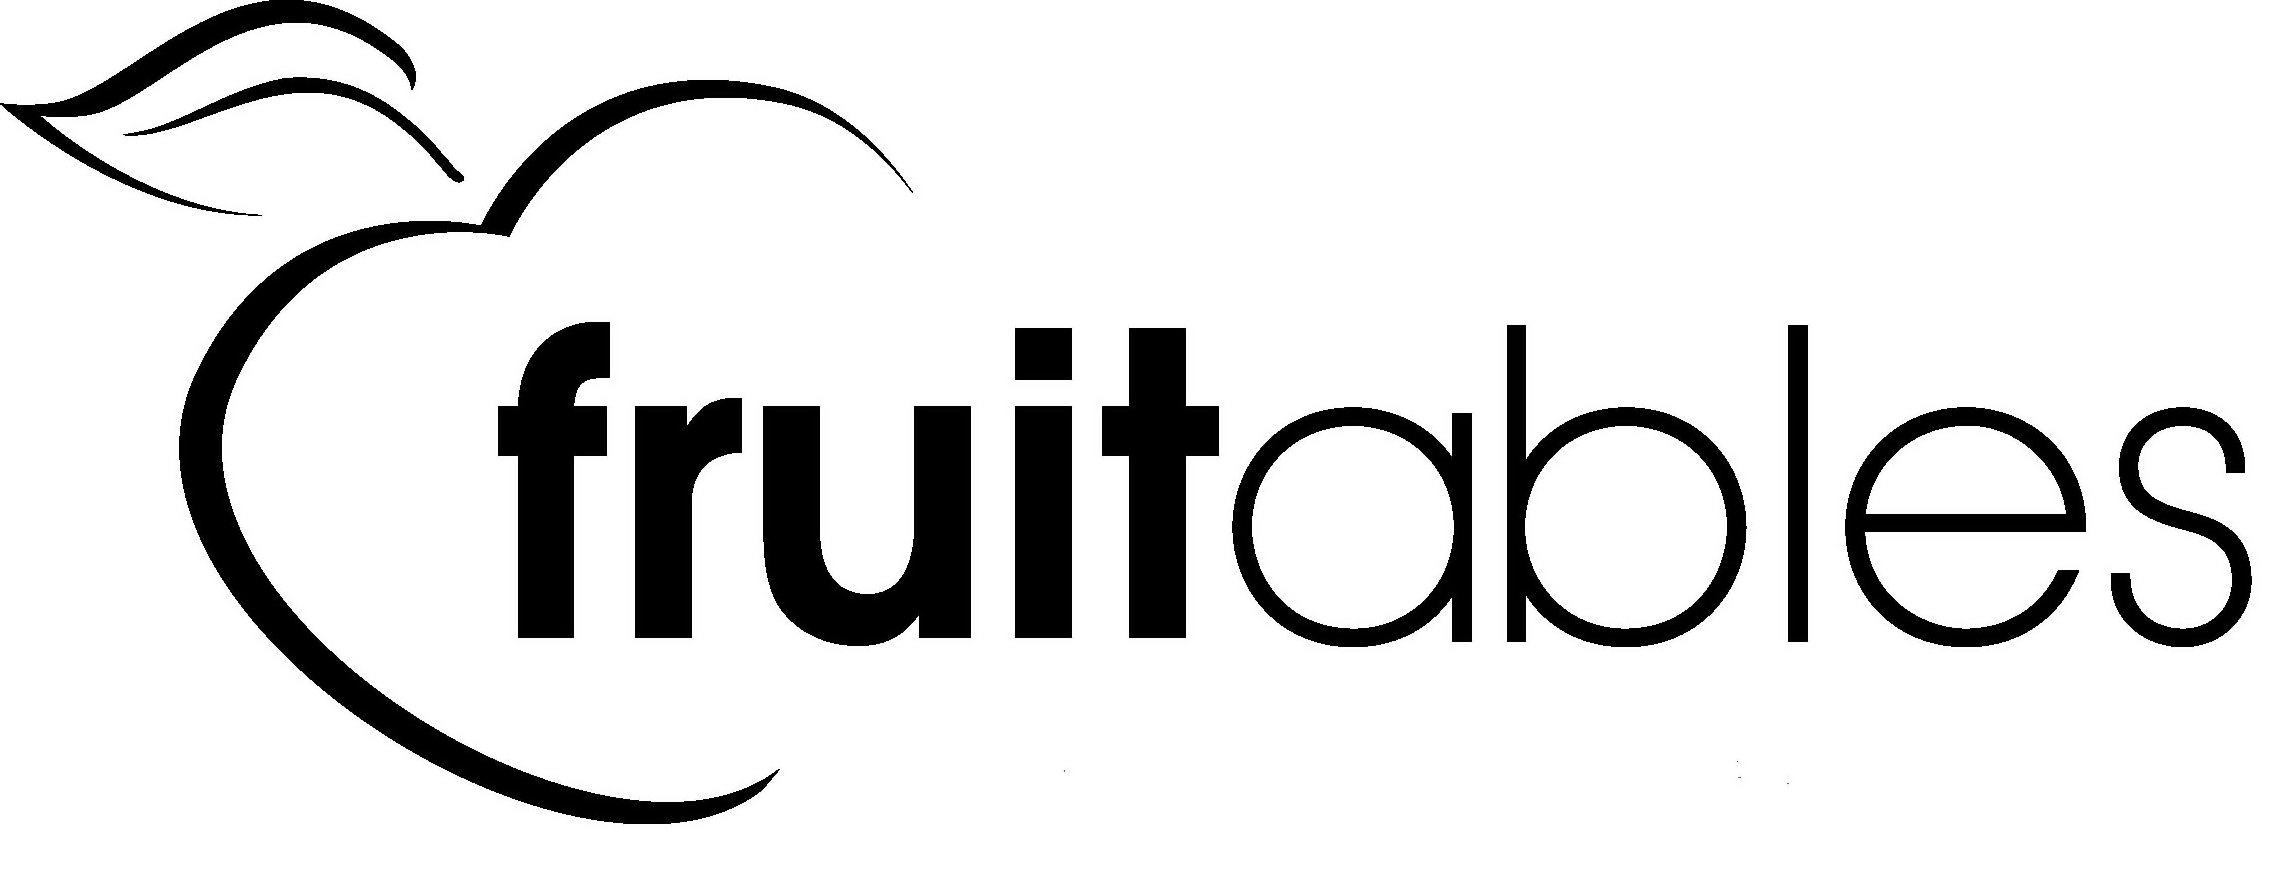 Trademark Logo FRUITABLES